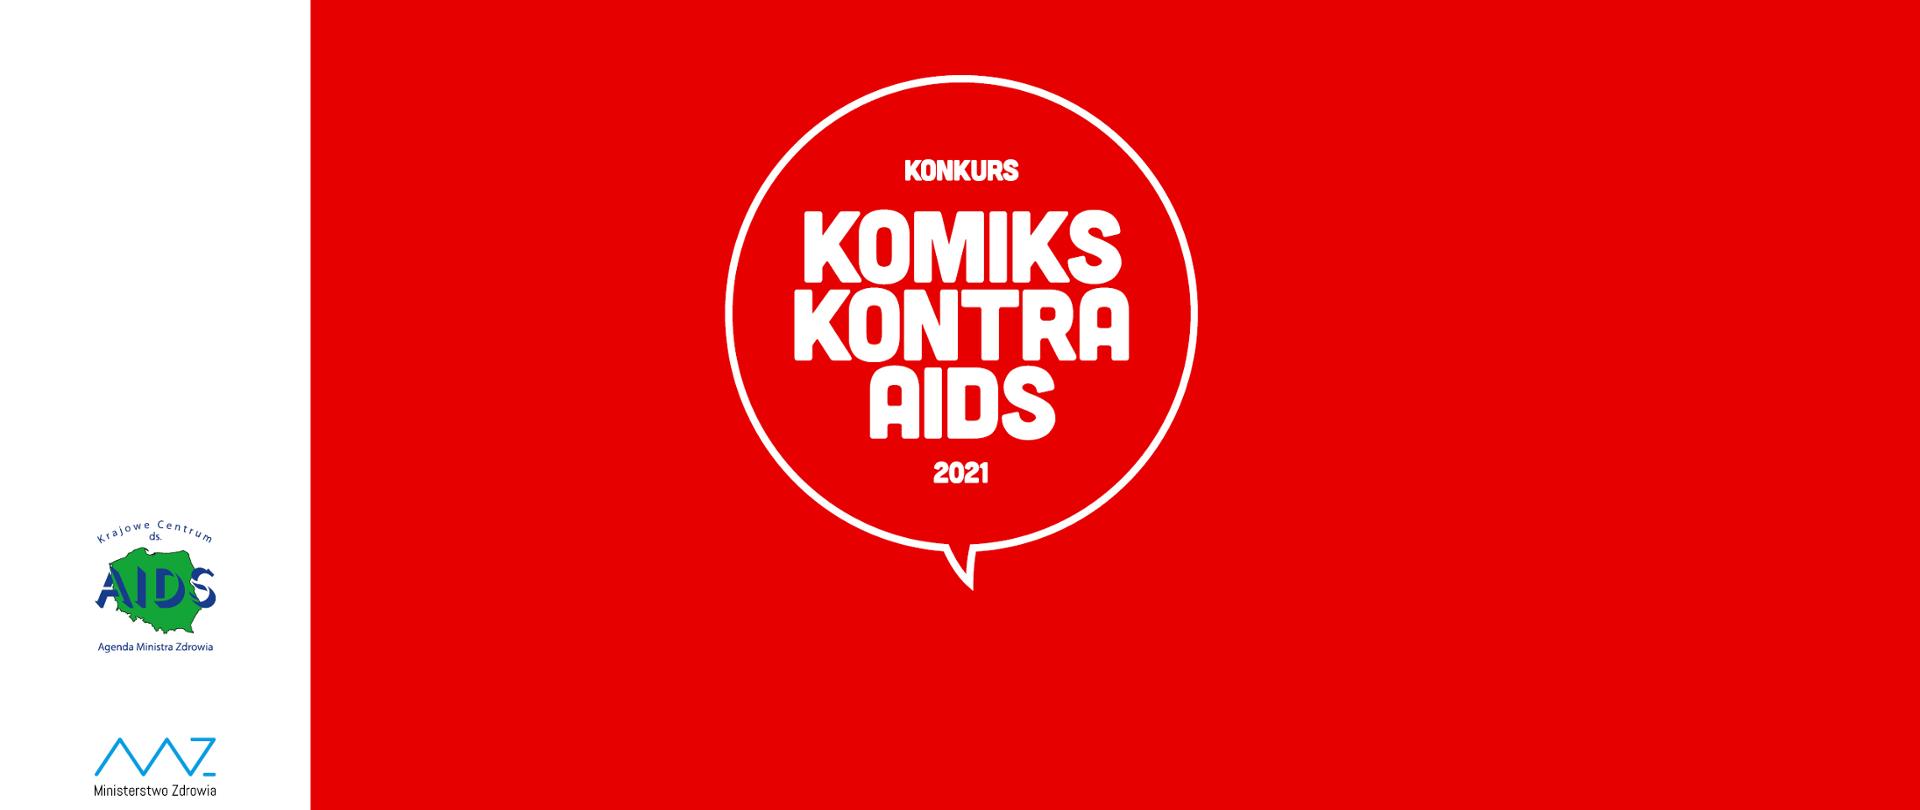 Plansza przedstawiająca obraz z napisem Komiks Kontra AIDS